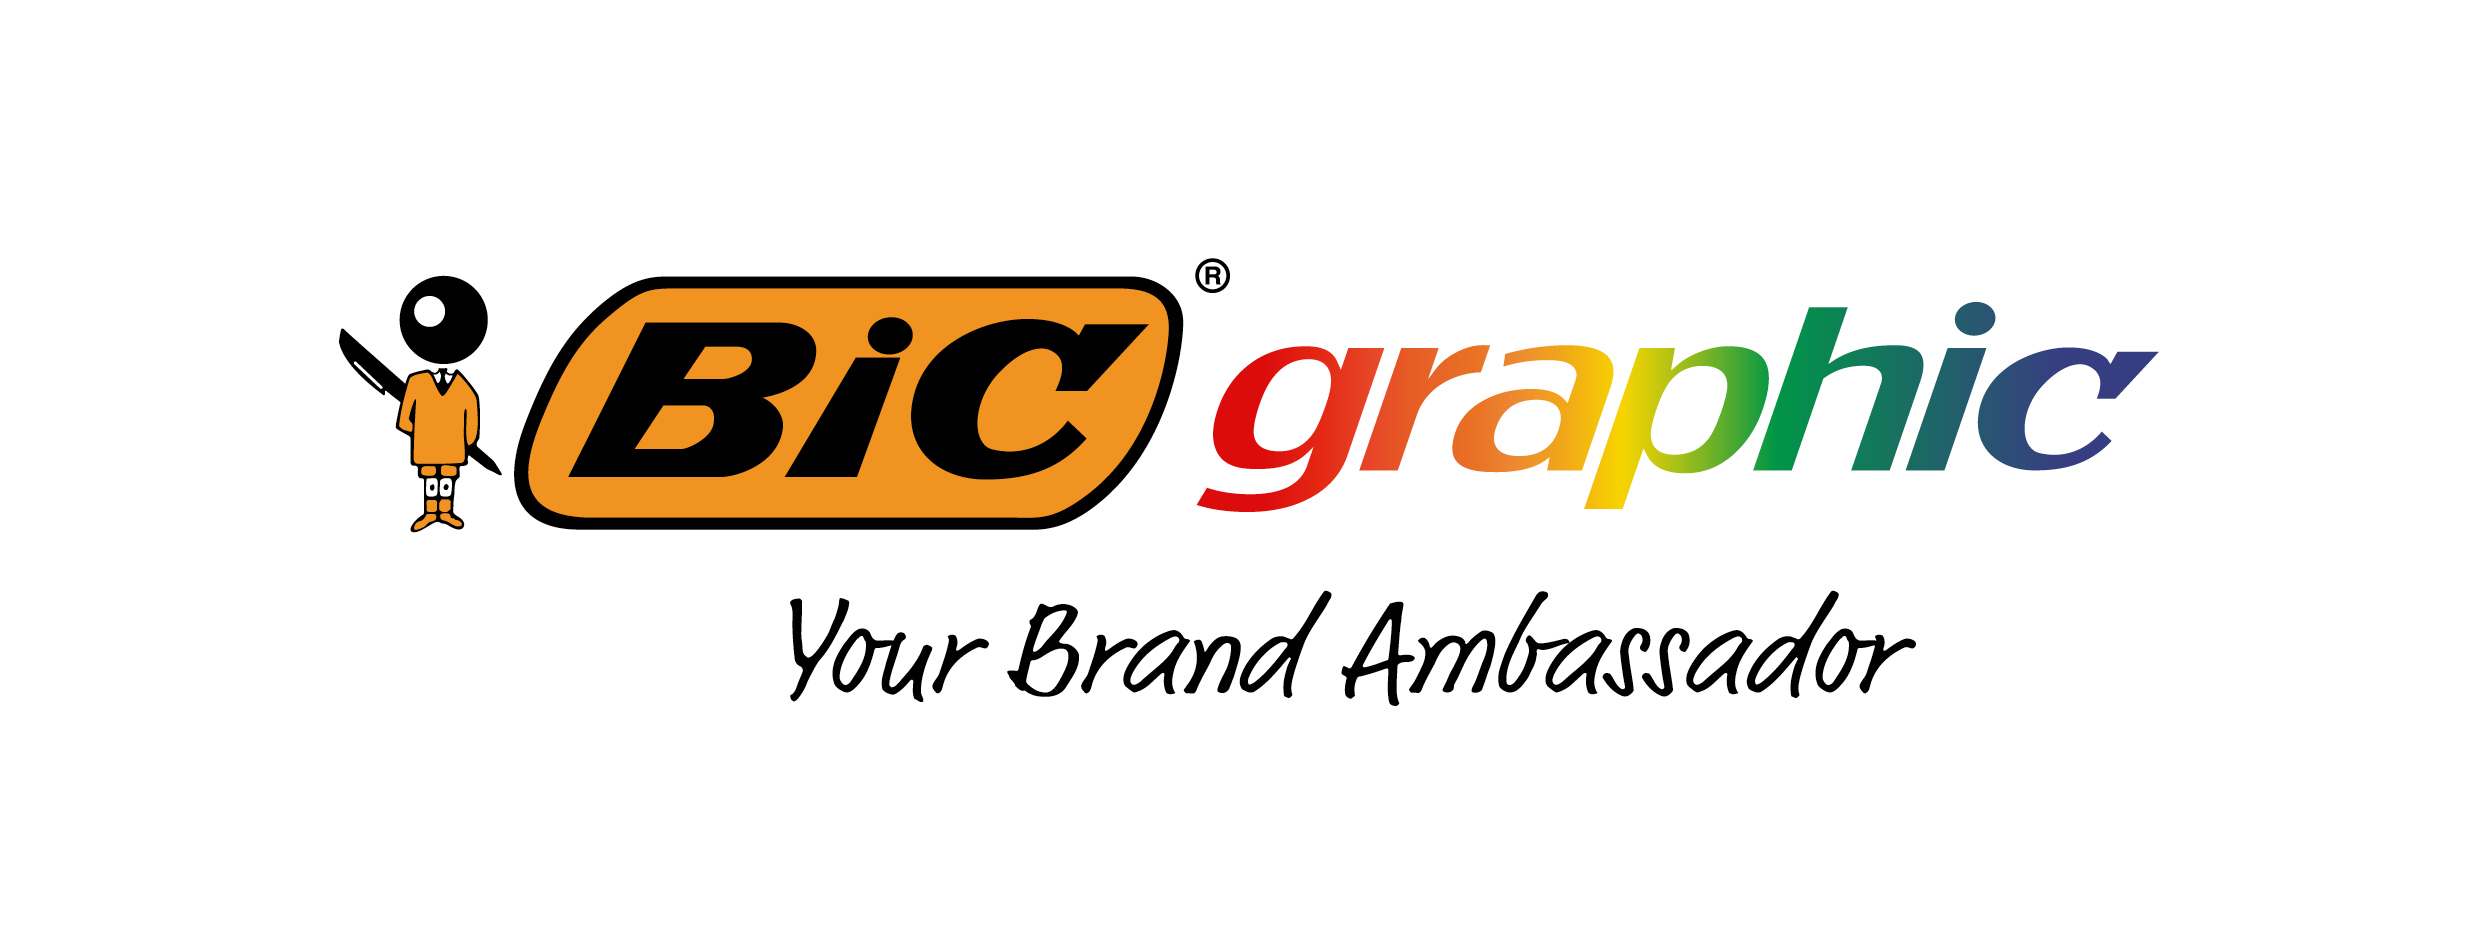 BIC Graphic Baseline L Gradient